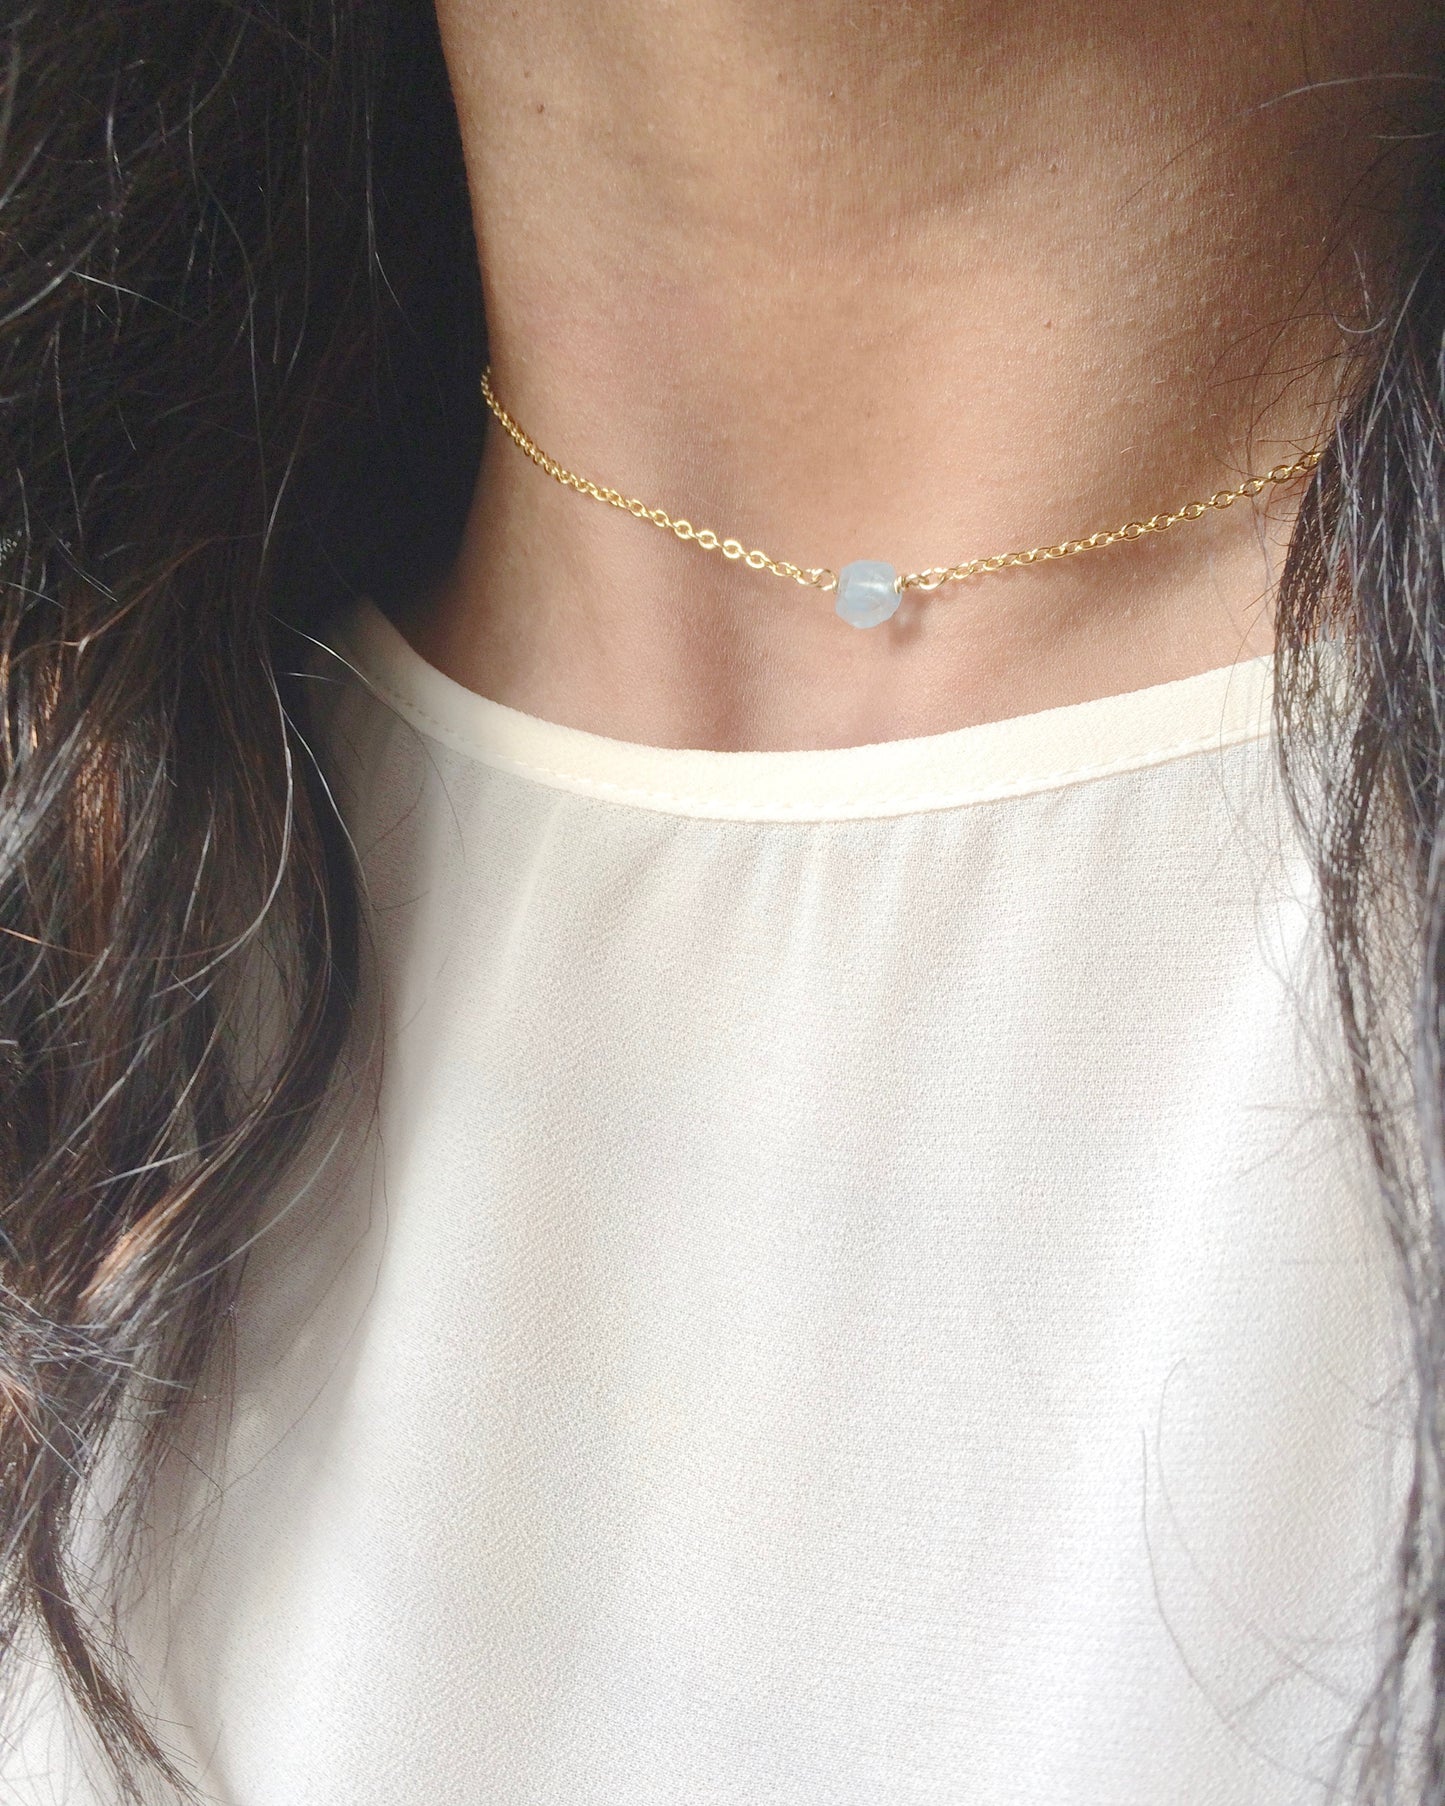 Dainty Aquamarine Minimalist Gemstone Necklace | IB Jewelry